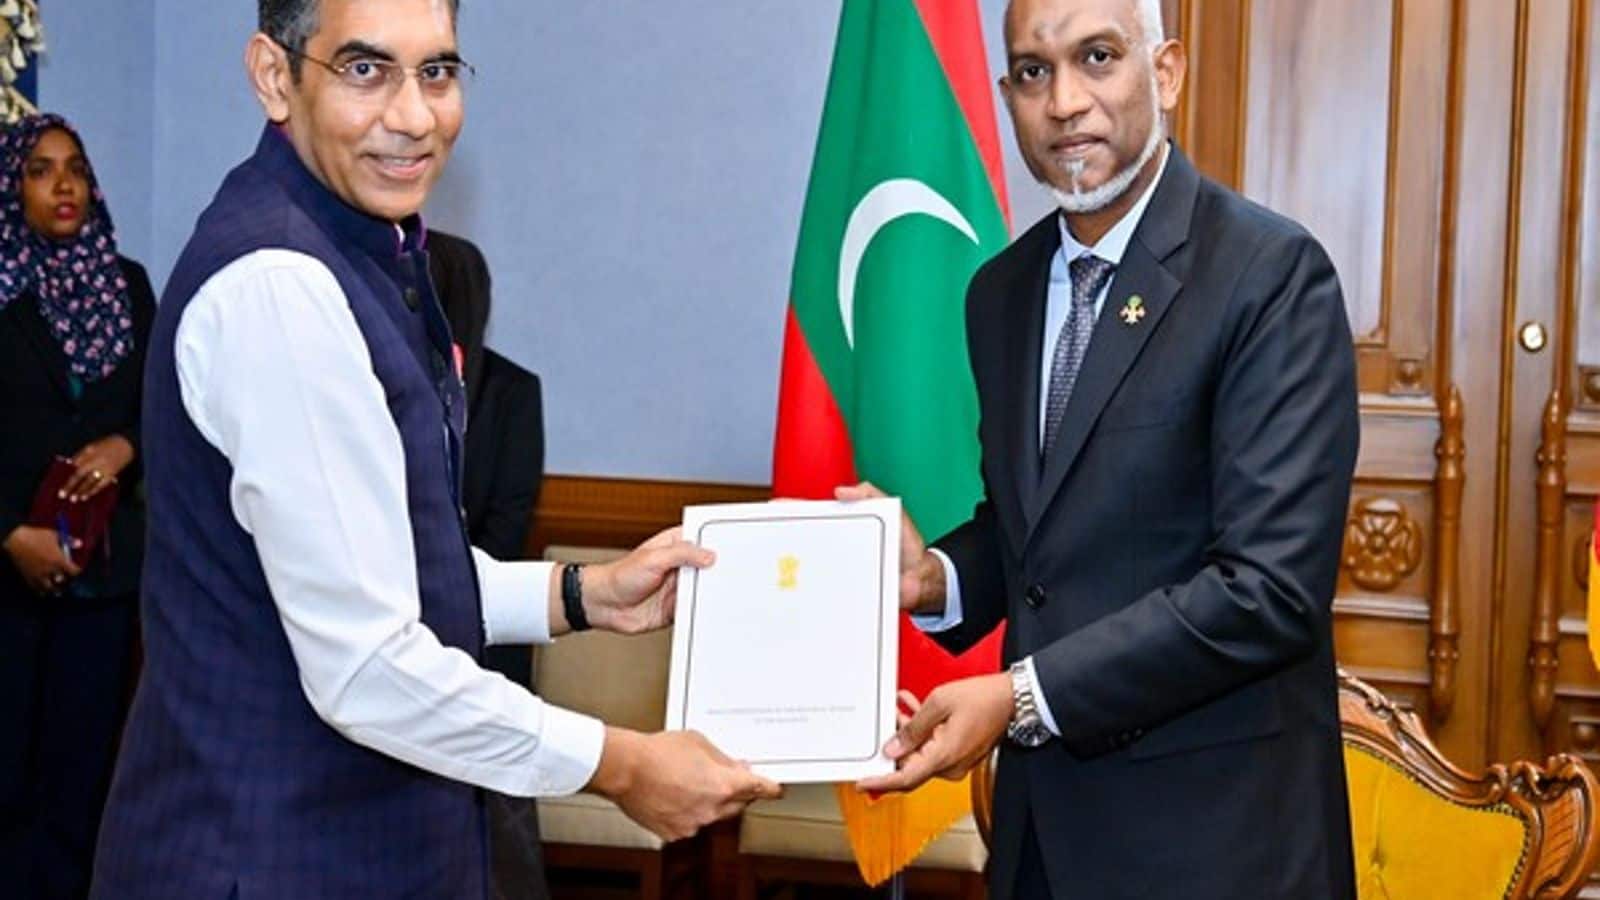 Maldives President Muizzu accepts invitation to Modi's swearing-in ceremony